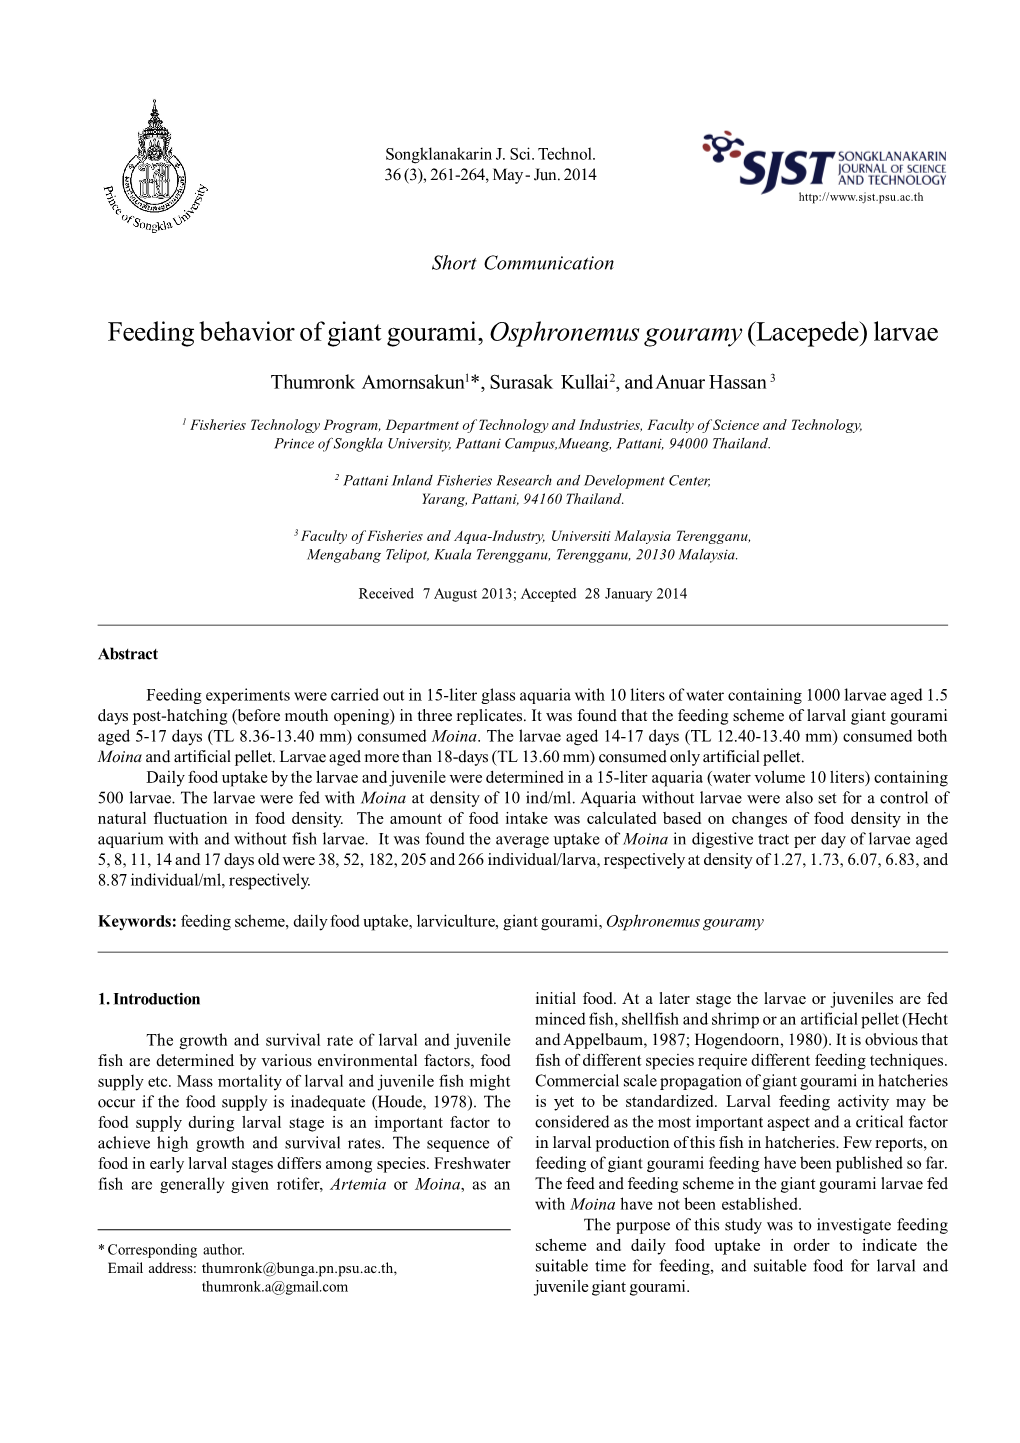 Feeding Behavior of Giant Gourami, Osphronemus Gouramy(Lacepede